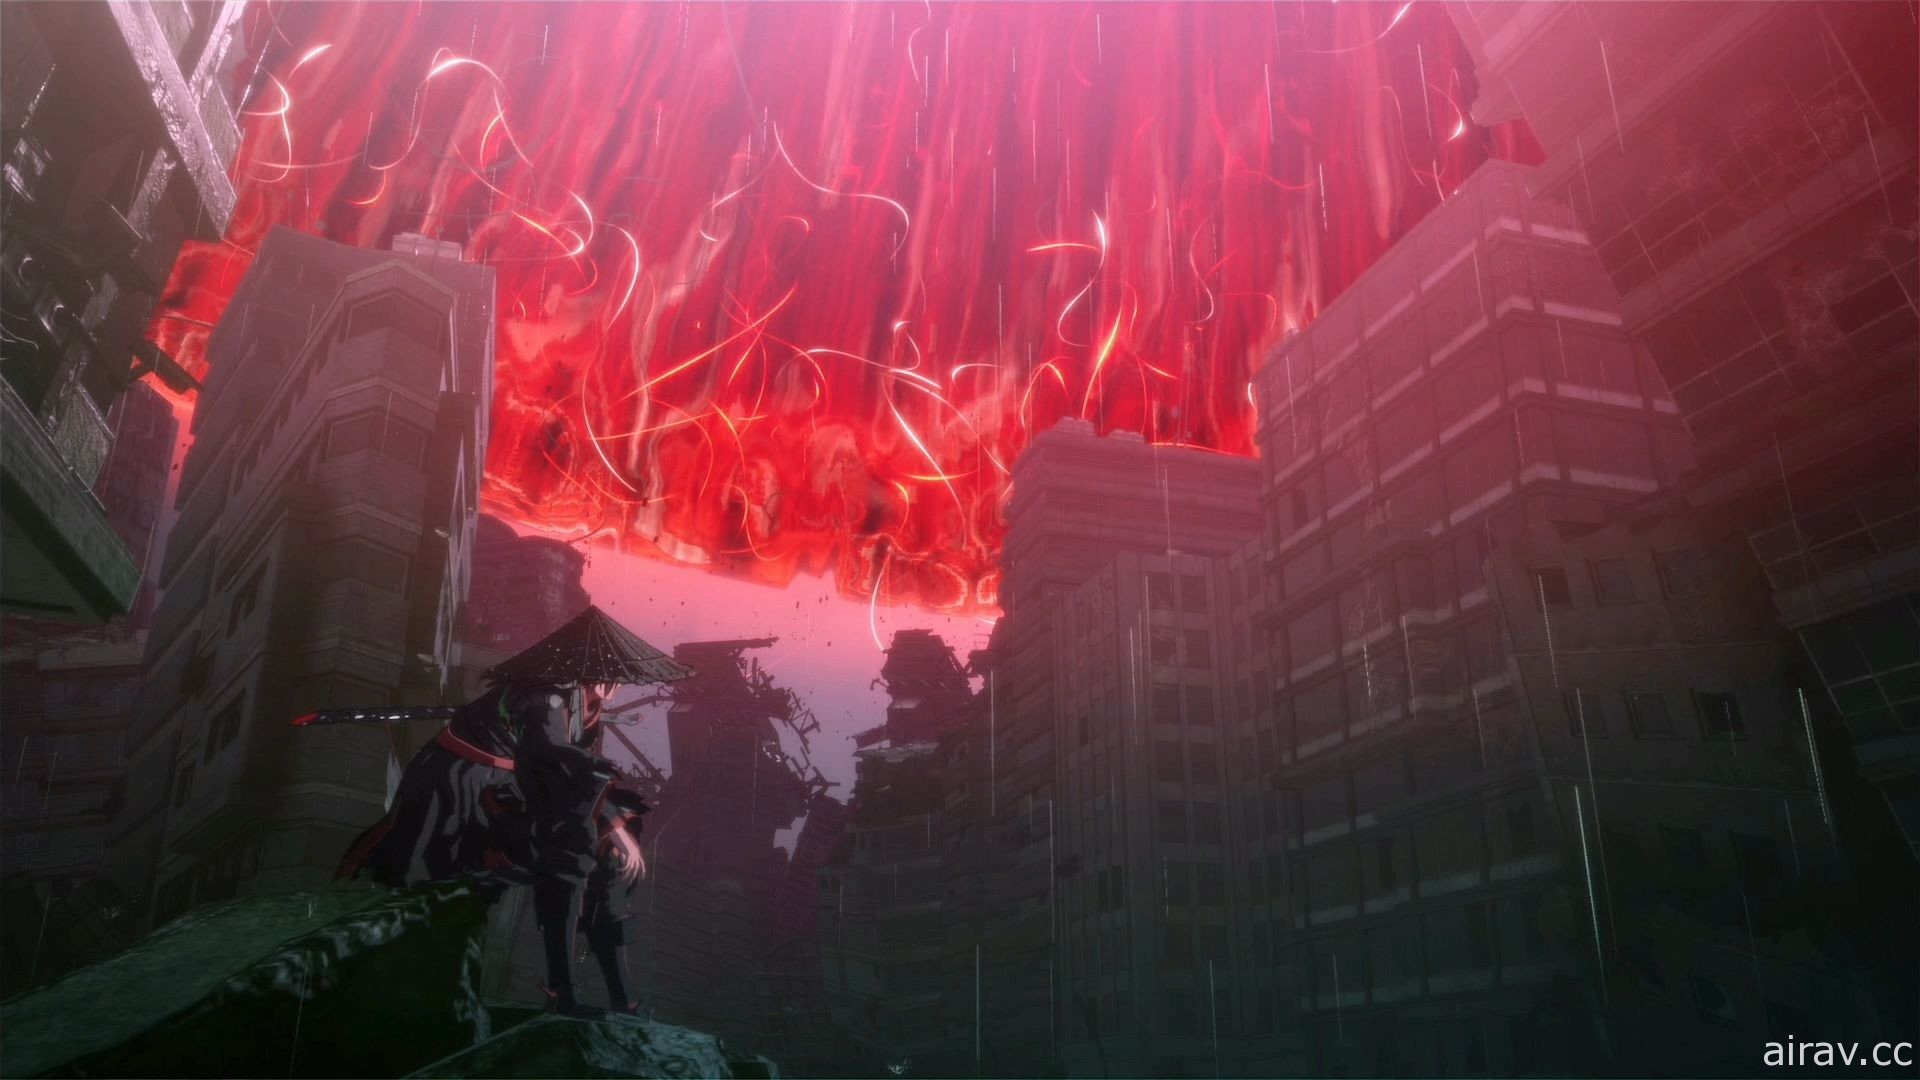 【试玩】《绯红结系》描写超脑力动作、牵绊及情缘的纯正扎实游戏体验